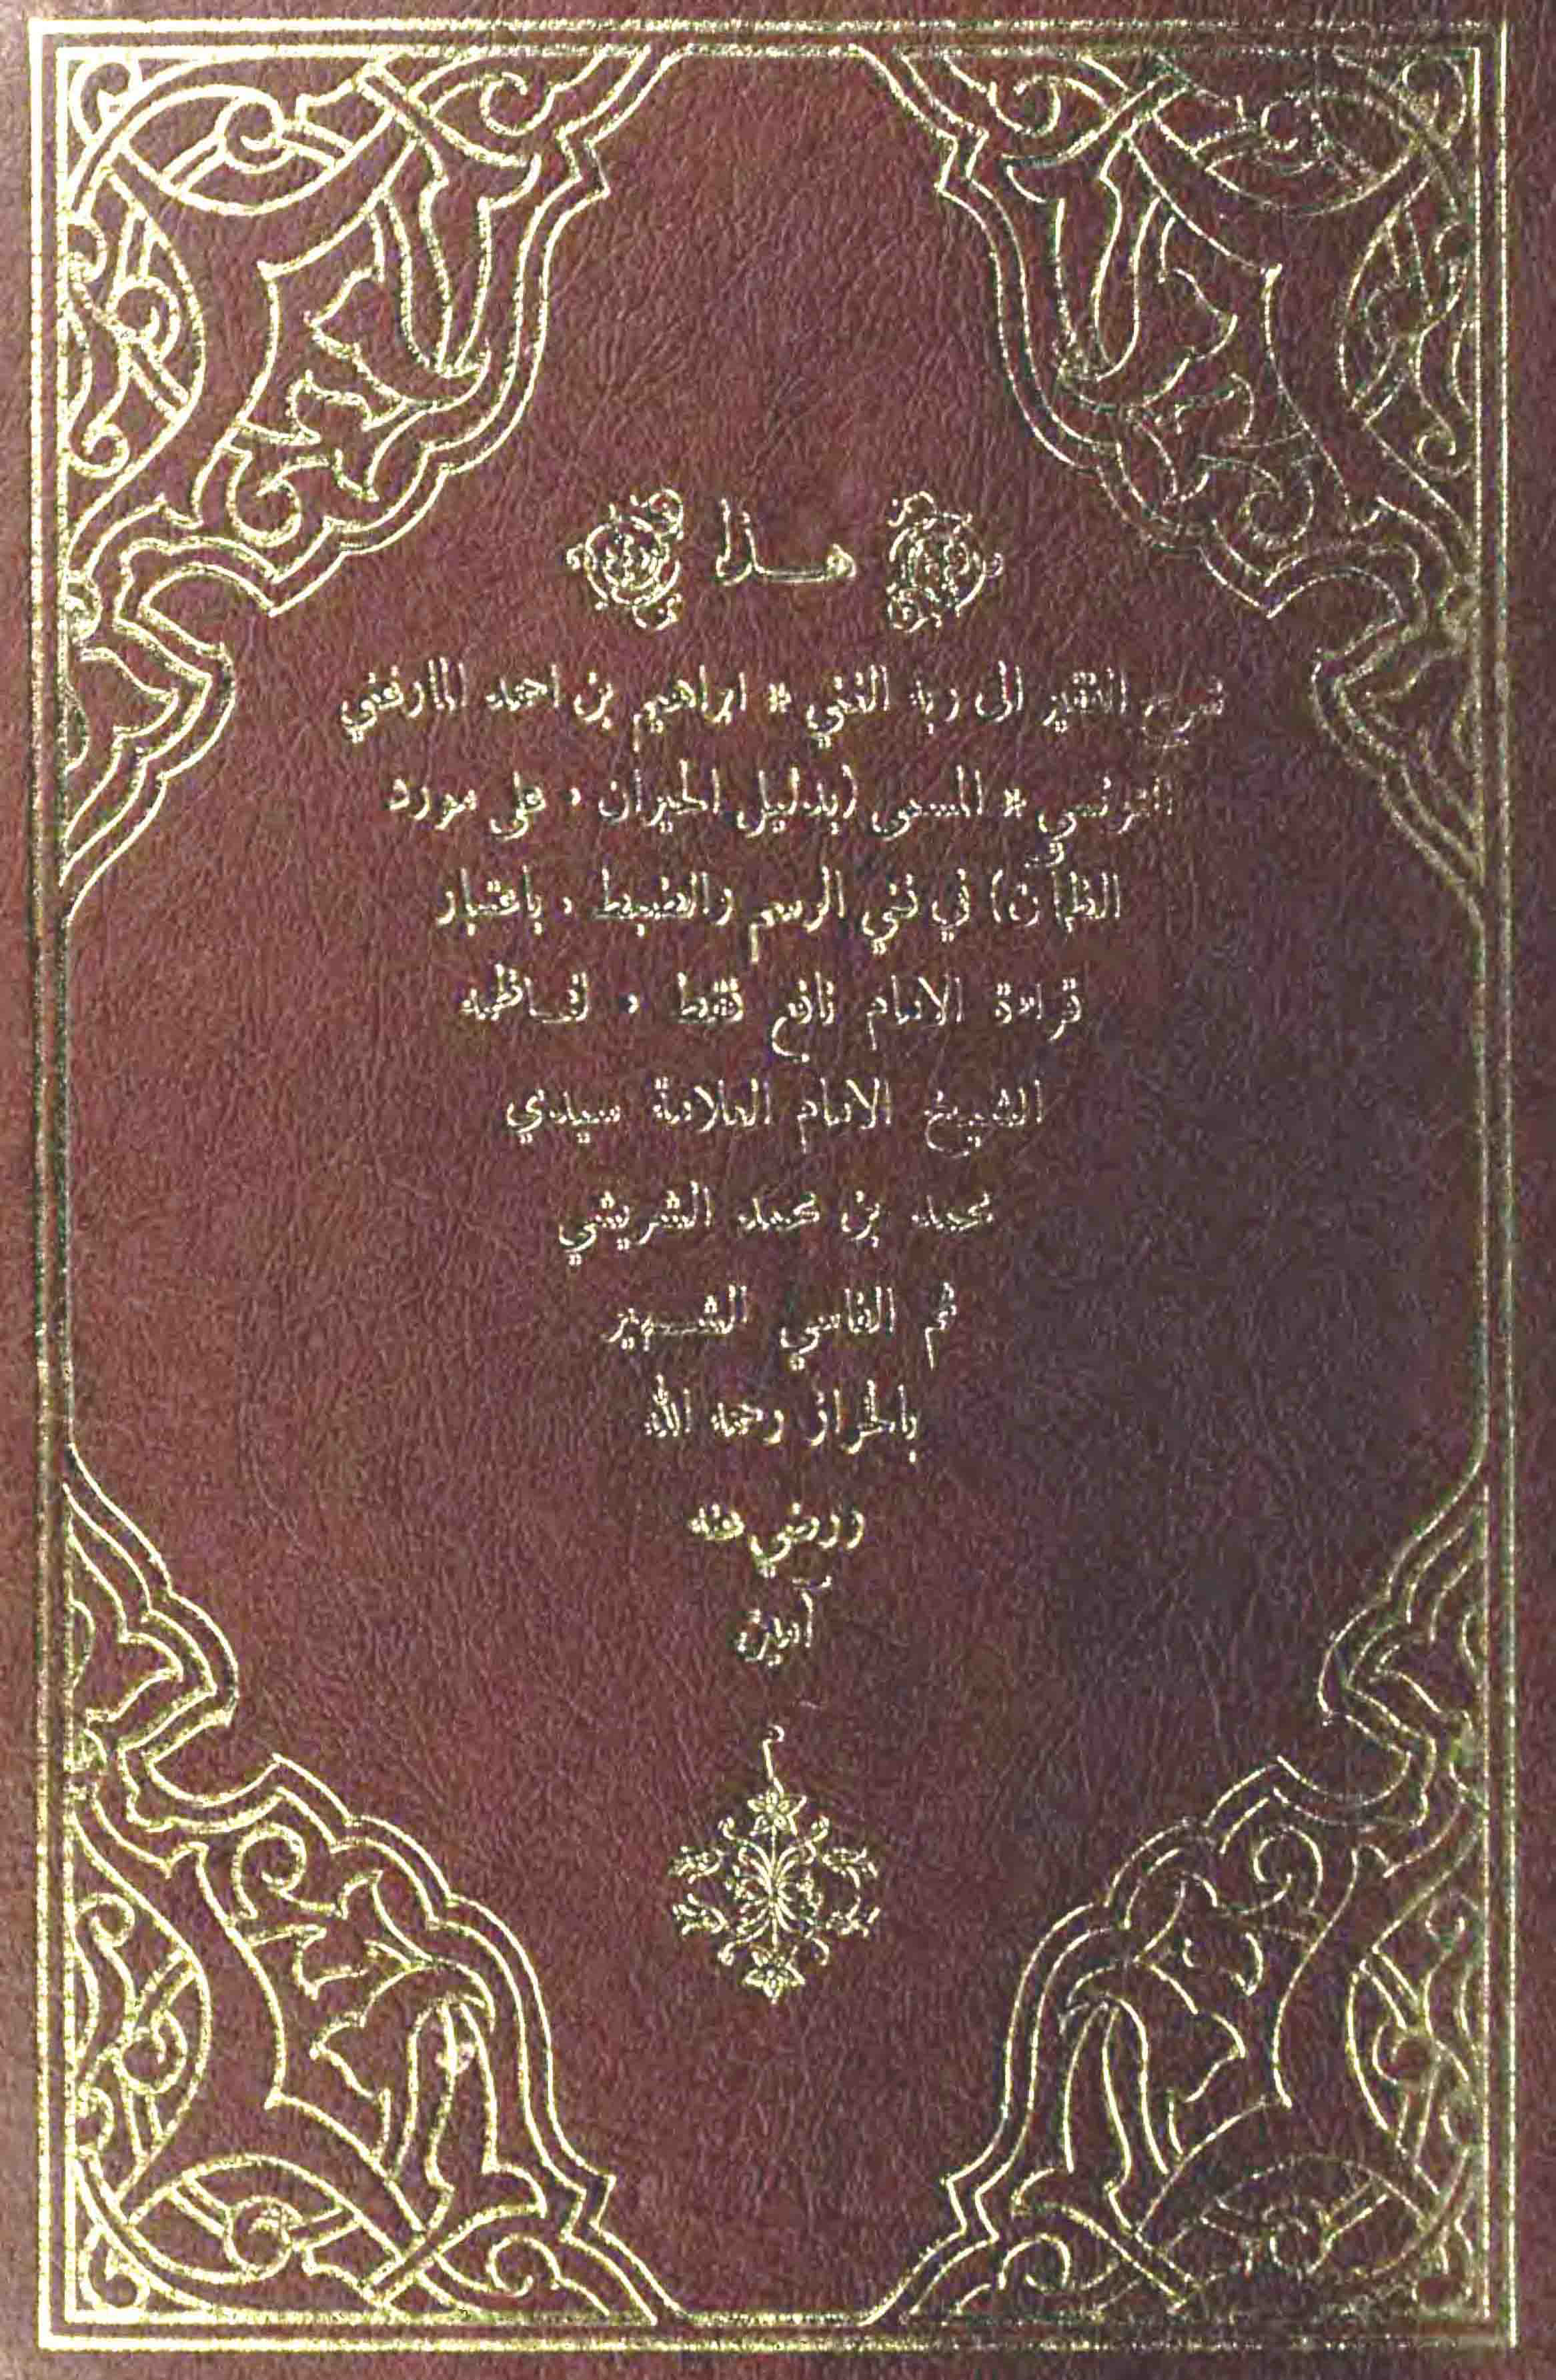 تحميل كتاب دليل الحيران على مورد الظمأن لـِ: الشيخ أبو إسحاق إبراهيم بن أحمد بن سليمان المارغني التونسي (ت 1349)